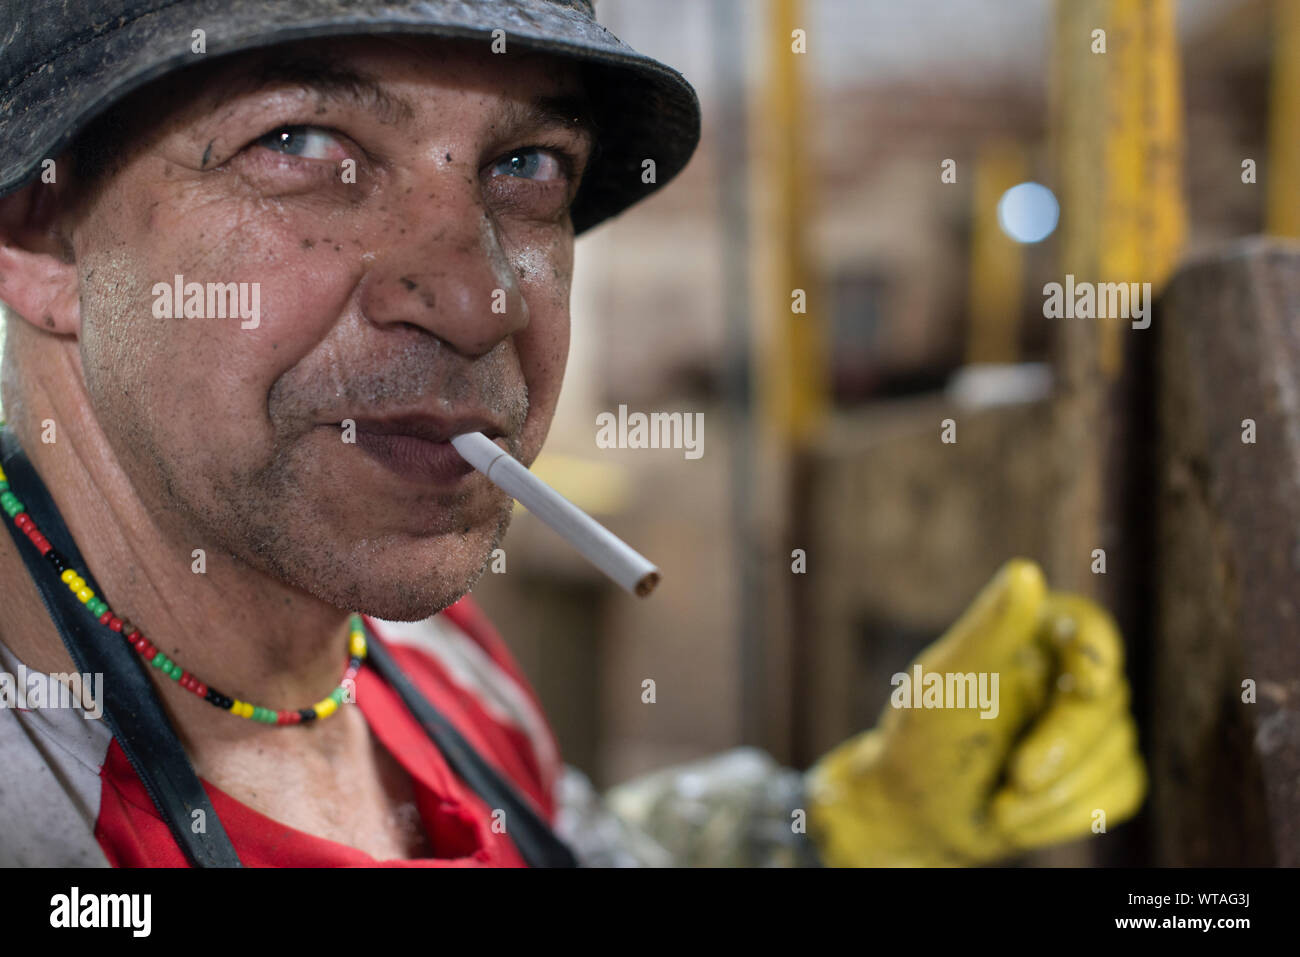 Gerberei Arbeiter mit Zigarette im Mund während der Pause Stockfoto